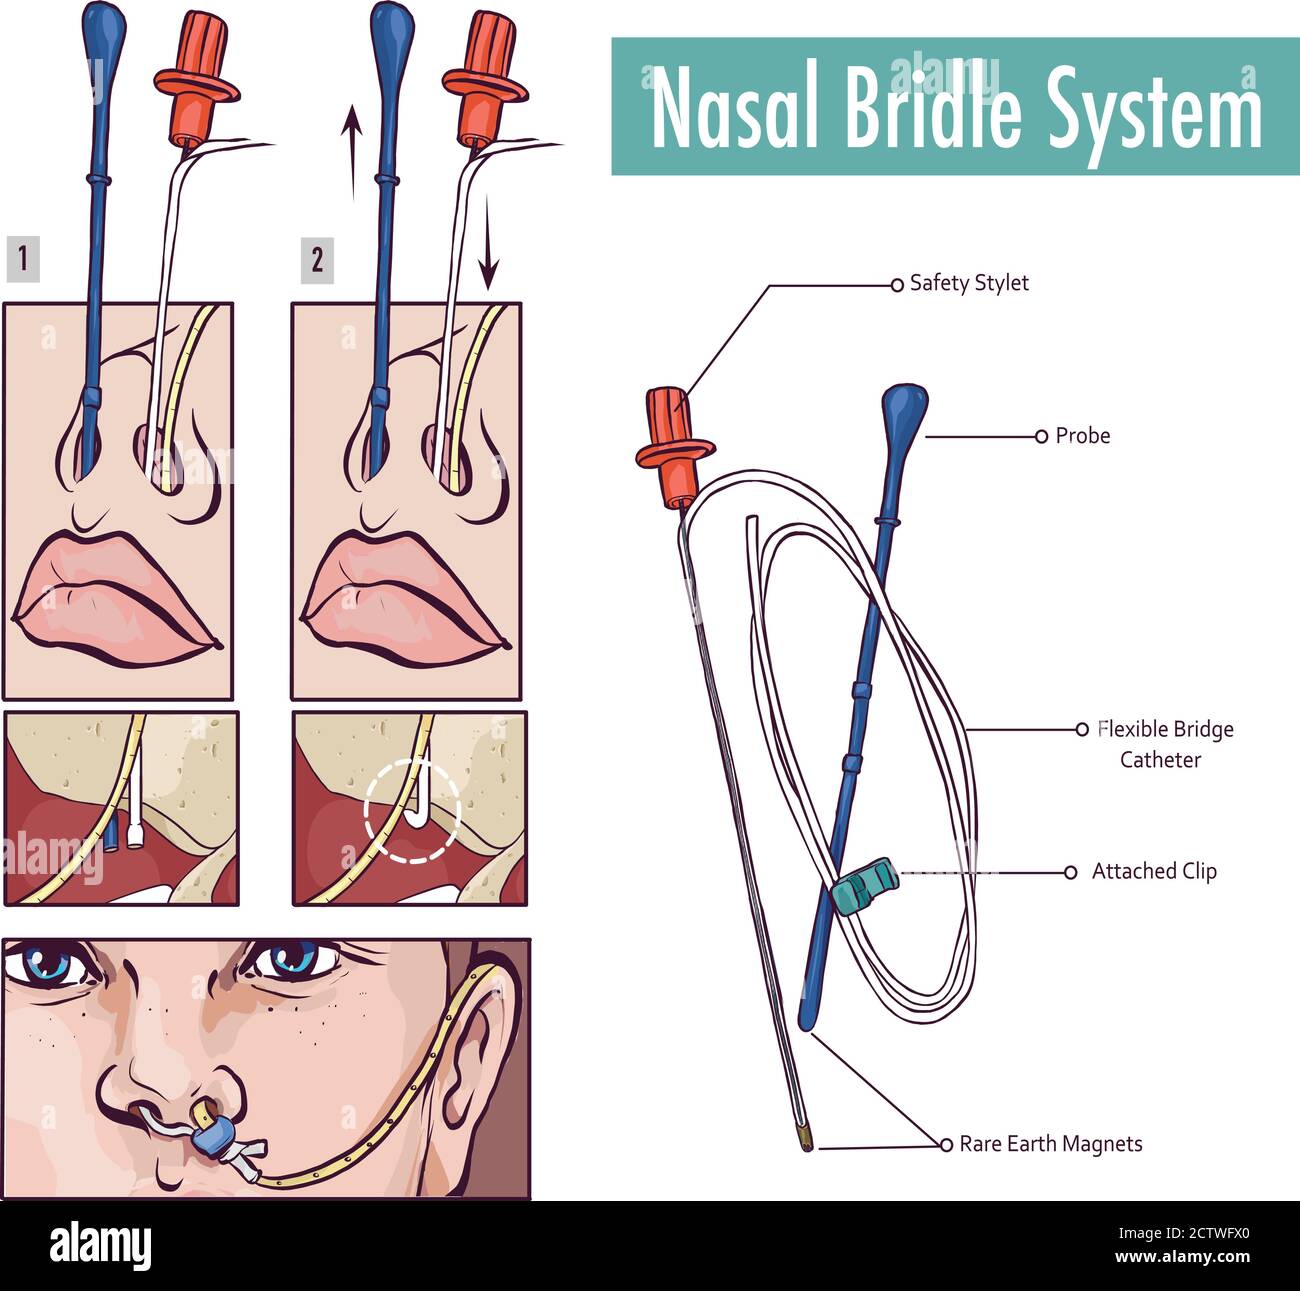 Une bride nasale fixant un tube nasogastrique au nez septum pour éviter tout retrait accidentel Illustration de Vecteur